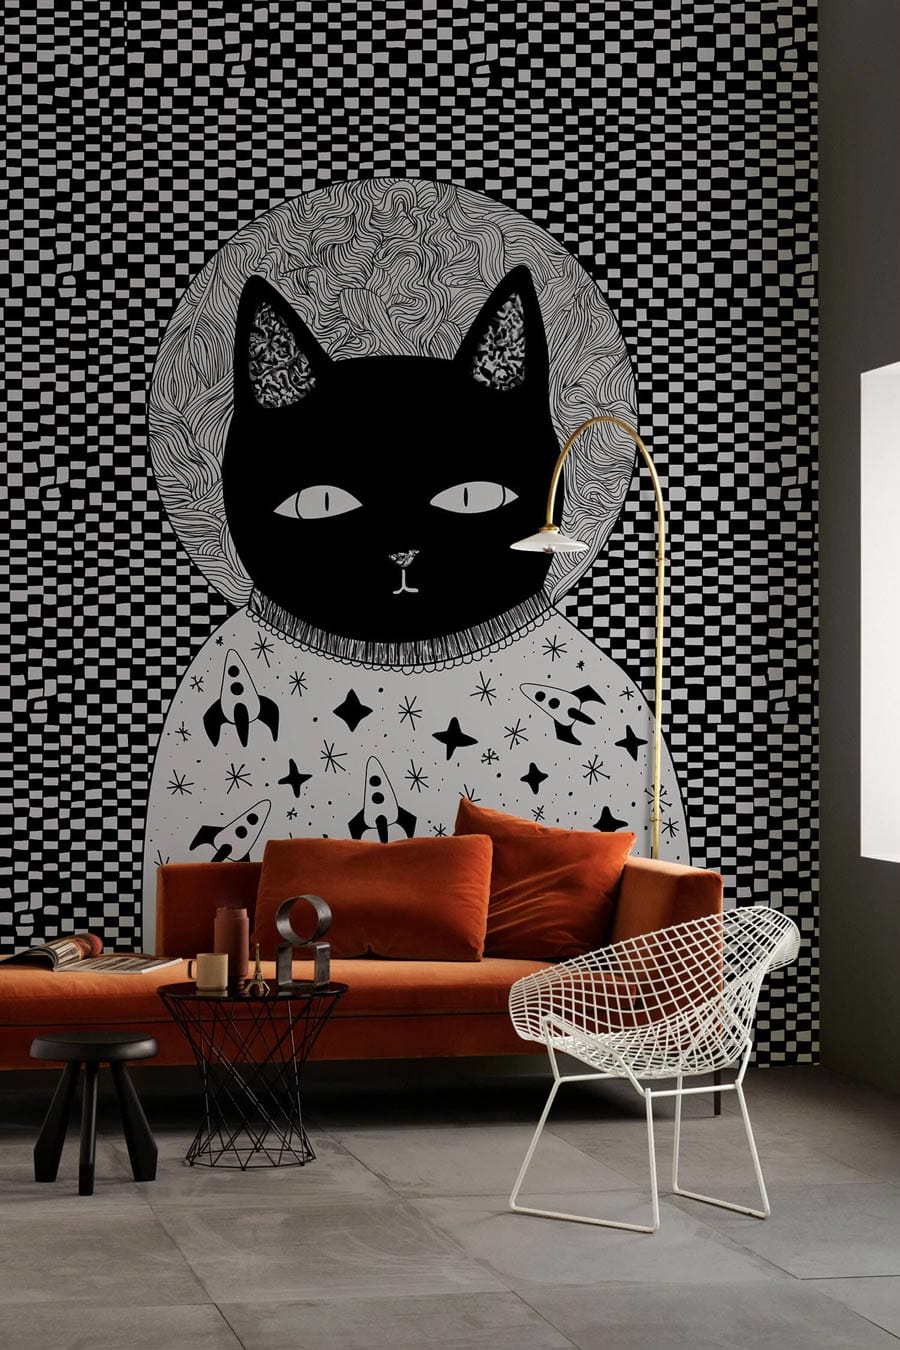 dark cat staring wallpaper mural lounge